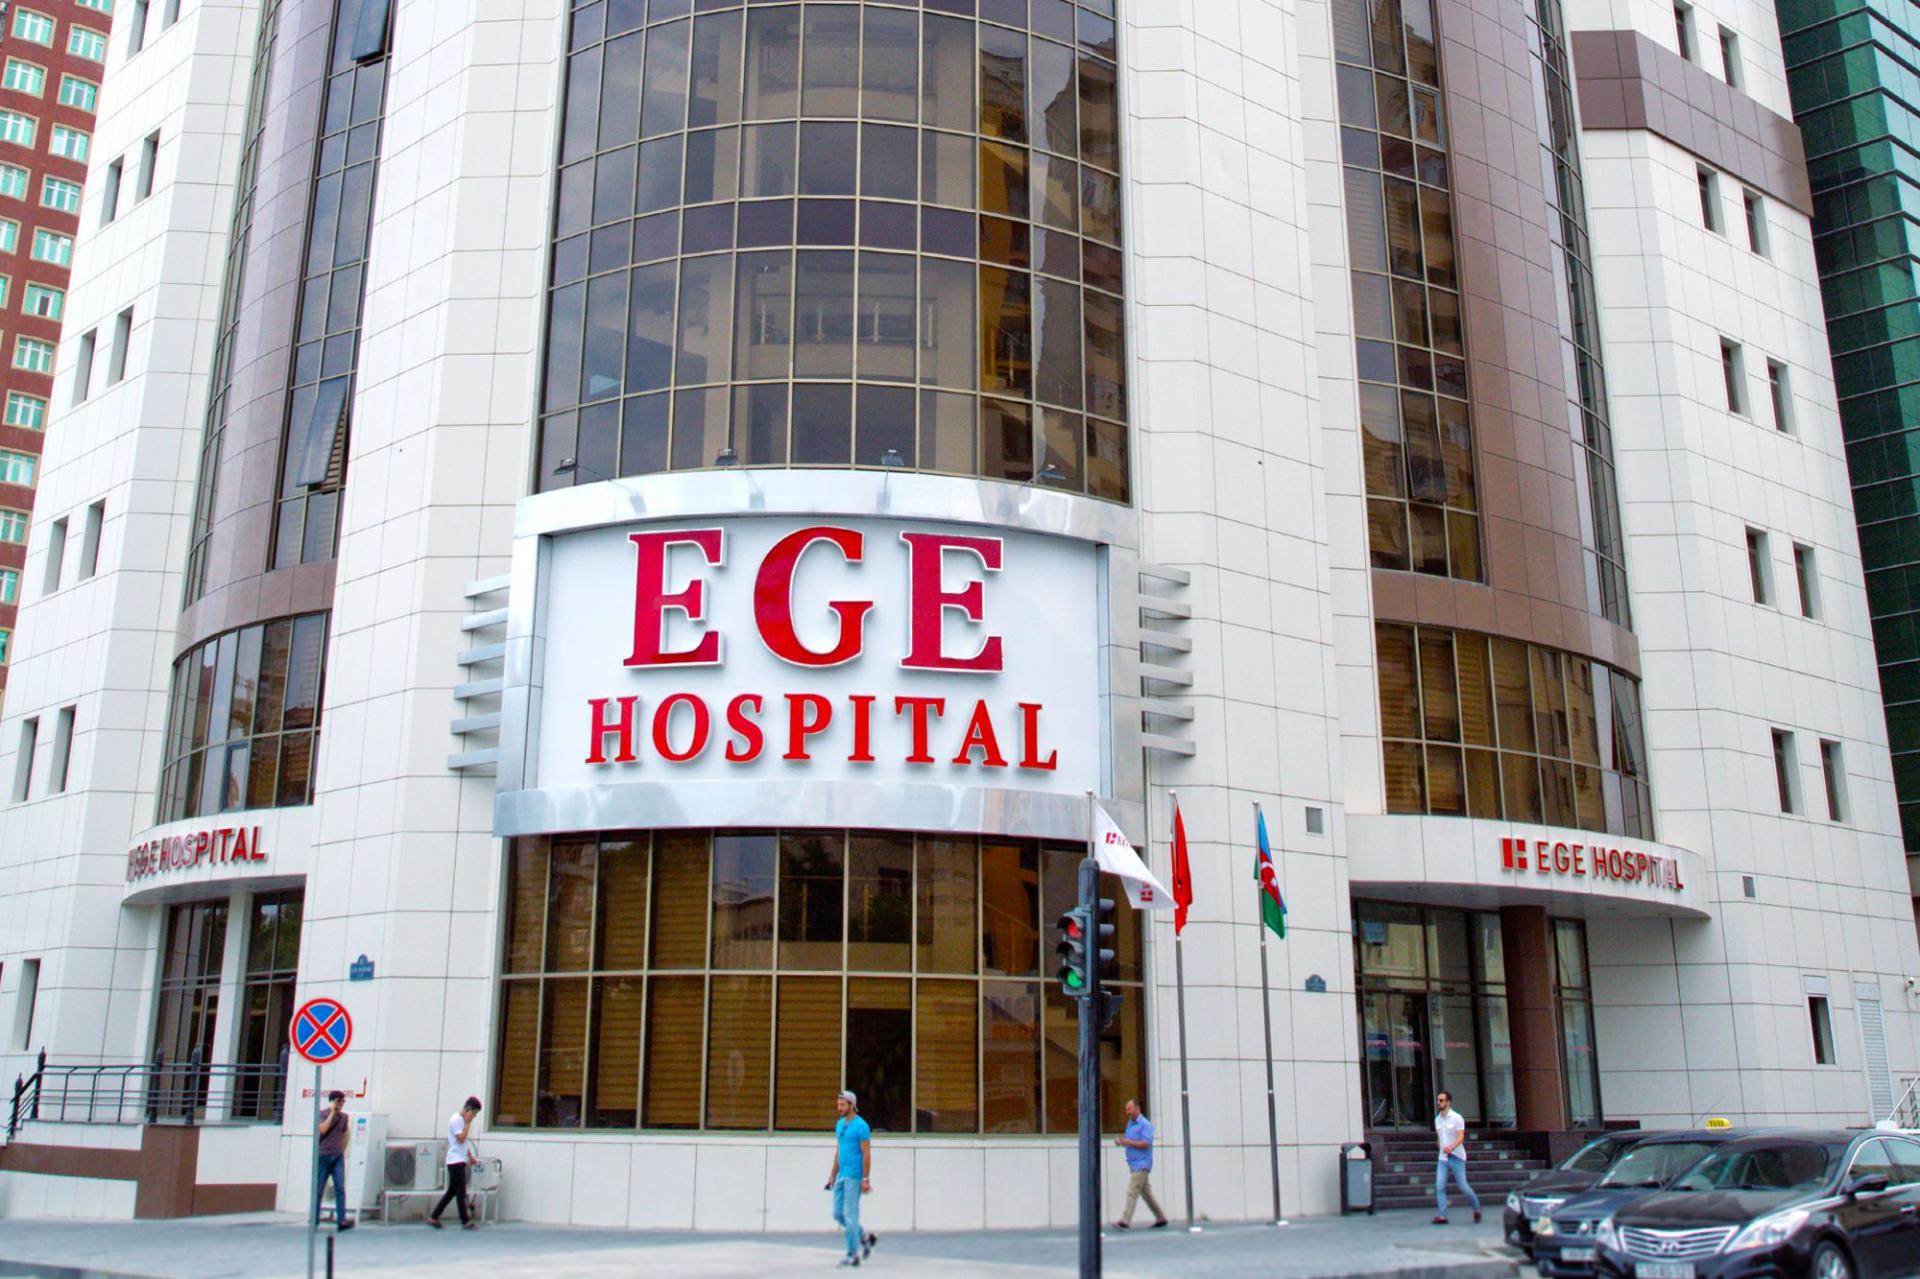 Ege Hospitalda xəstə 2 saat çəkən ürək masajı ilə həyata qayıtdı